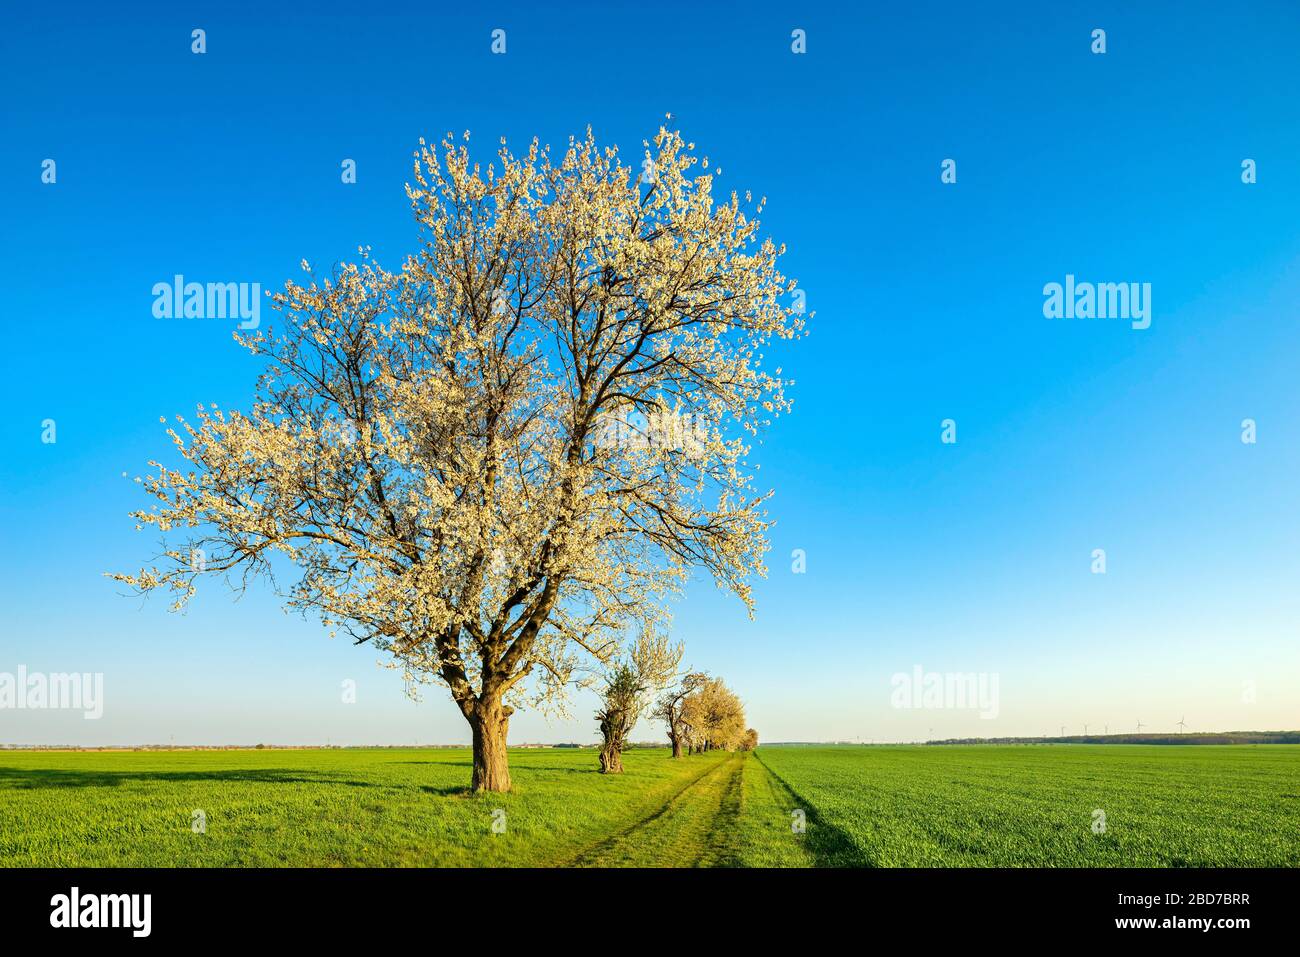 Alberi di ciliegio in fiore su un percorso di campo alla luce del mattino, campi verdi senza fine sotto un cielo blu, Burgenlandkreis, Sassonia-Anhalt, Germania Foto Stock